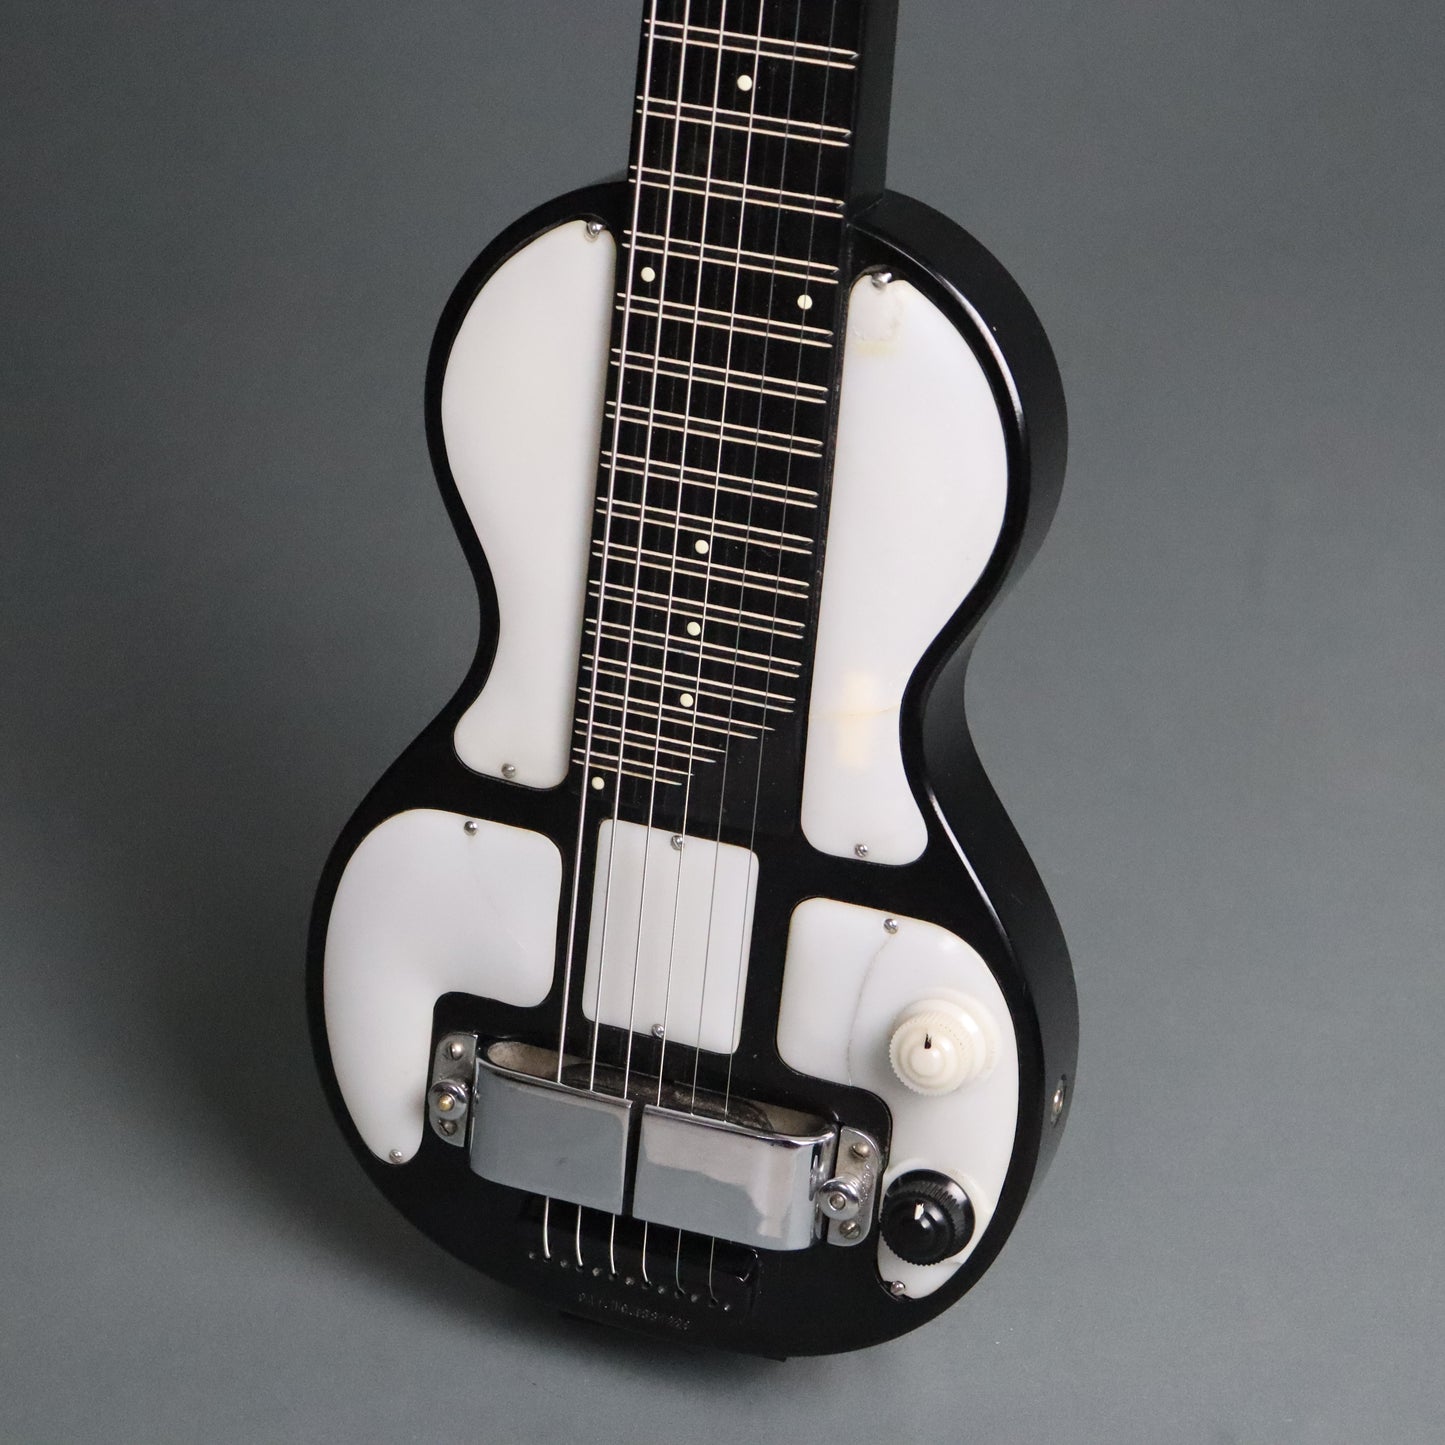 1941 Rickenbacher B-6 Hawaiian Lap Steel Guitar Panda 1.5" Horseshoe Pickup B6 Lapsteel